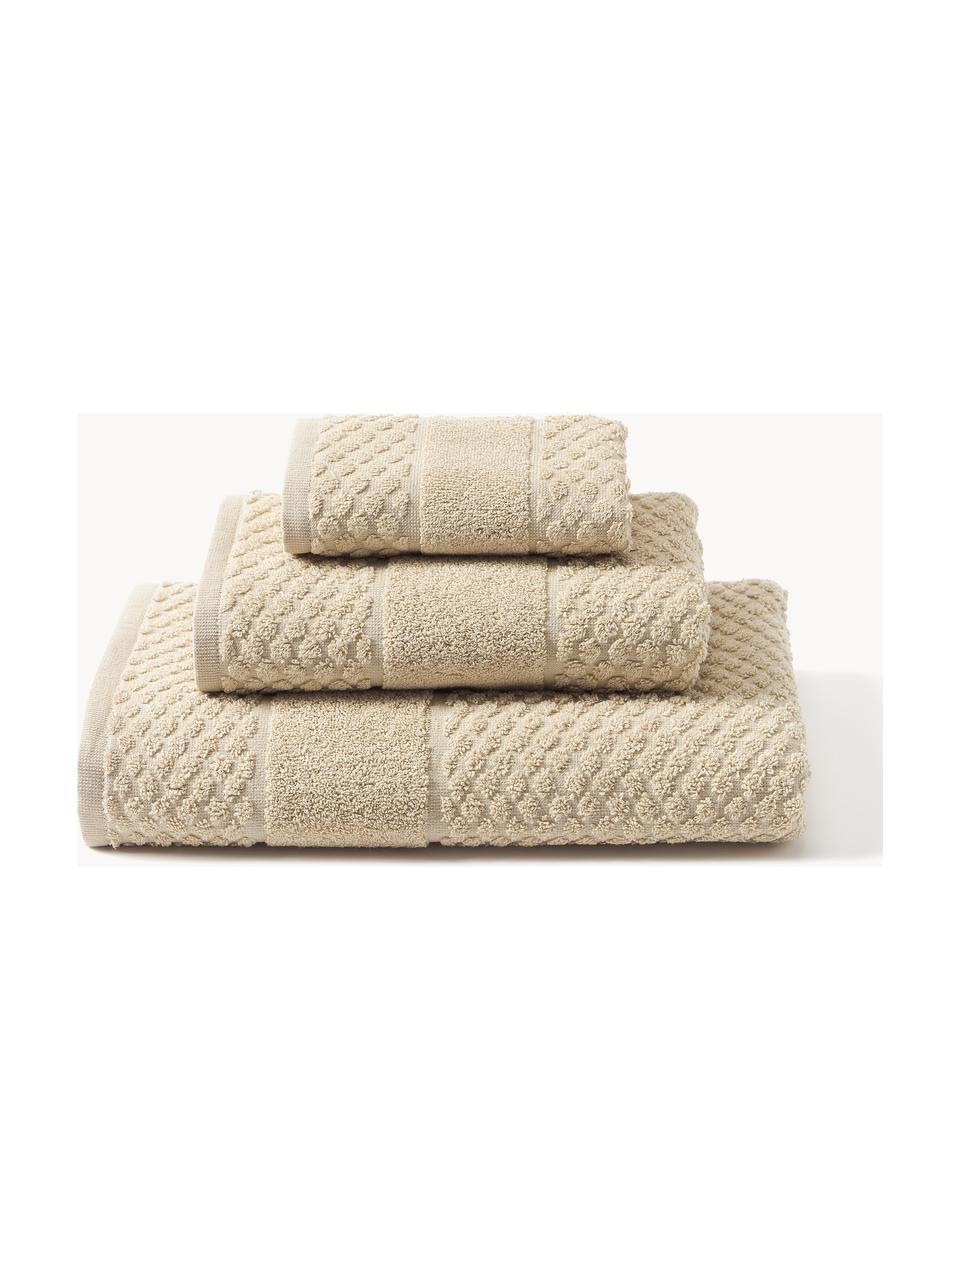 Lot de serviettes de bain en nid d'abeille Katharina, tailles variées, Beige, 3 éléments (1 serviette invité, 1 serviette de toilette et 1 drap de bain)